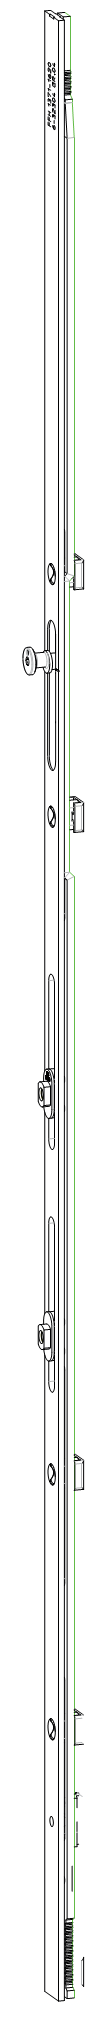 GU-ITALIA -  Cremonese GU-966 per complanare parallelo altezza maniglia fissa prolungabile senza dss - gr / dim. 1090 - alt. man. 600 - lbb/hbb 1371 - 1620